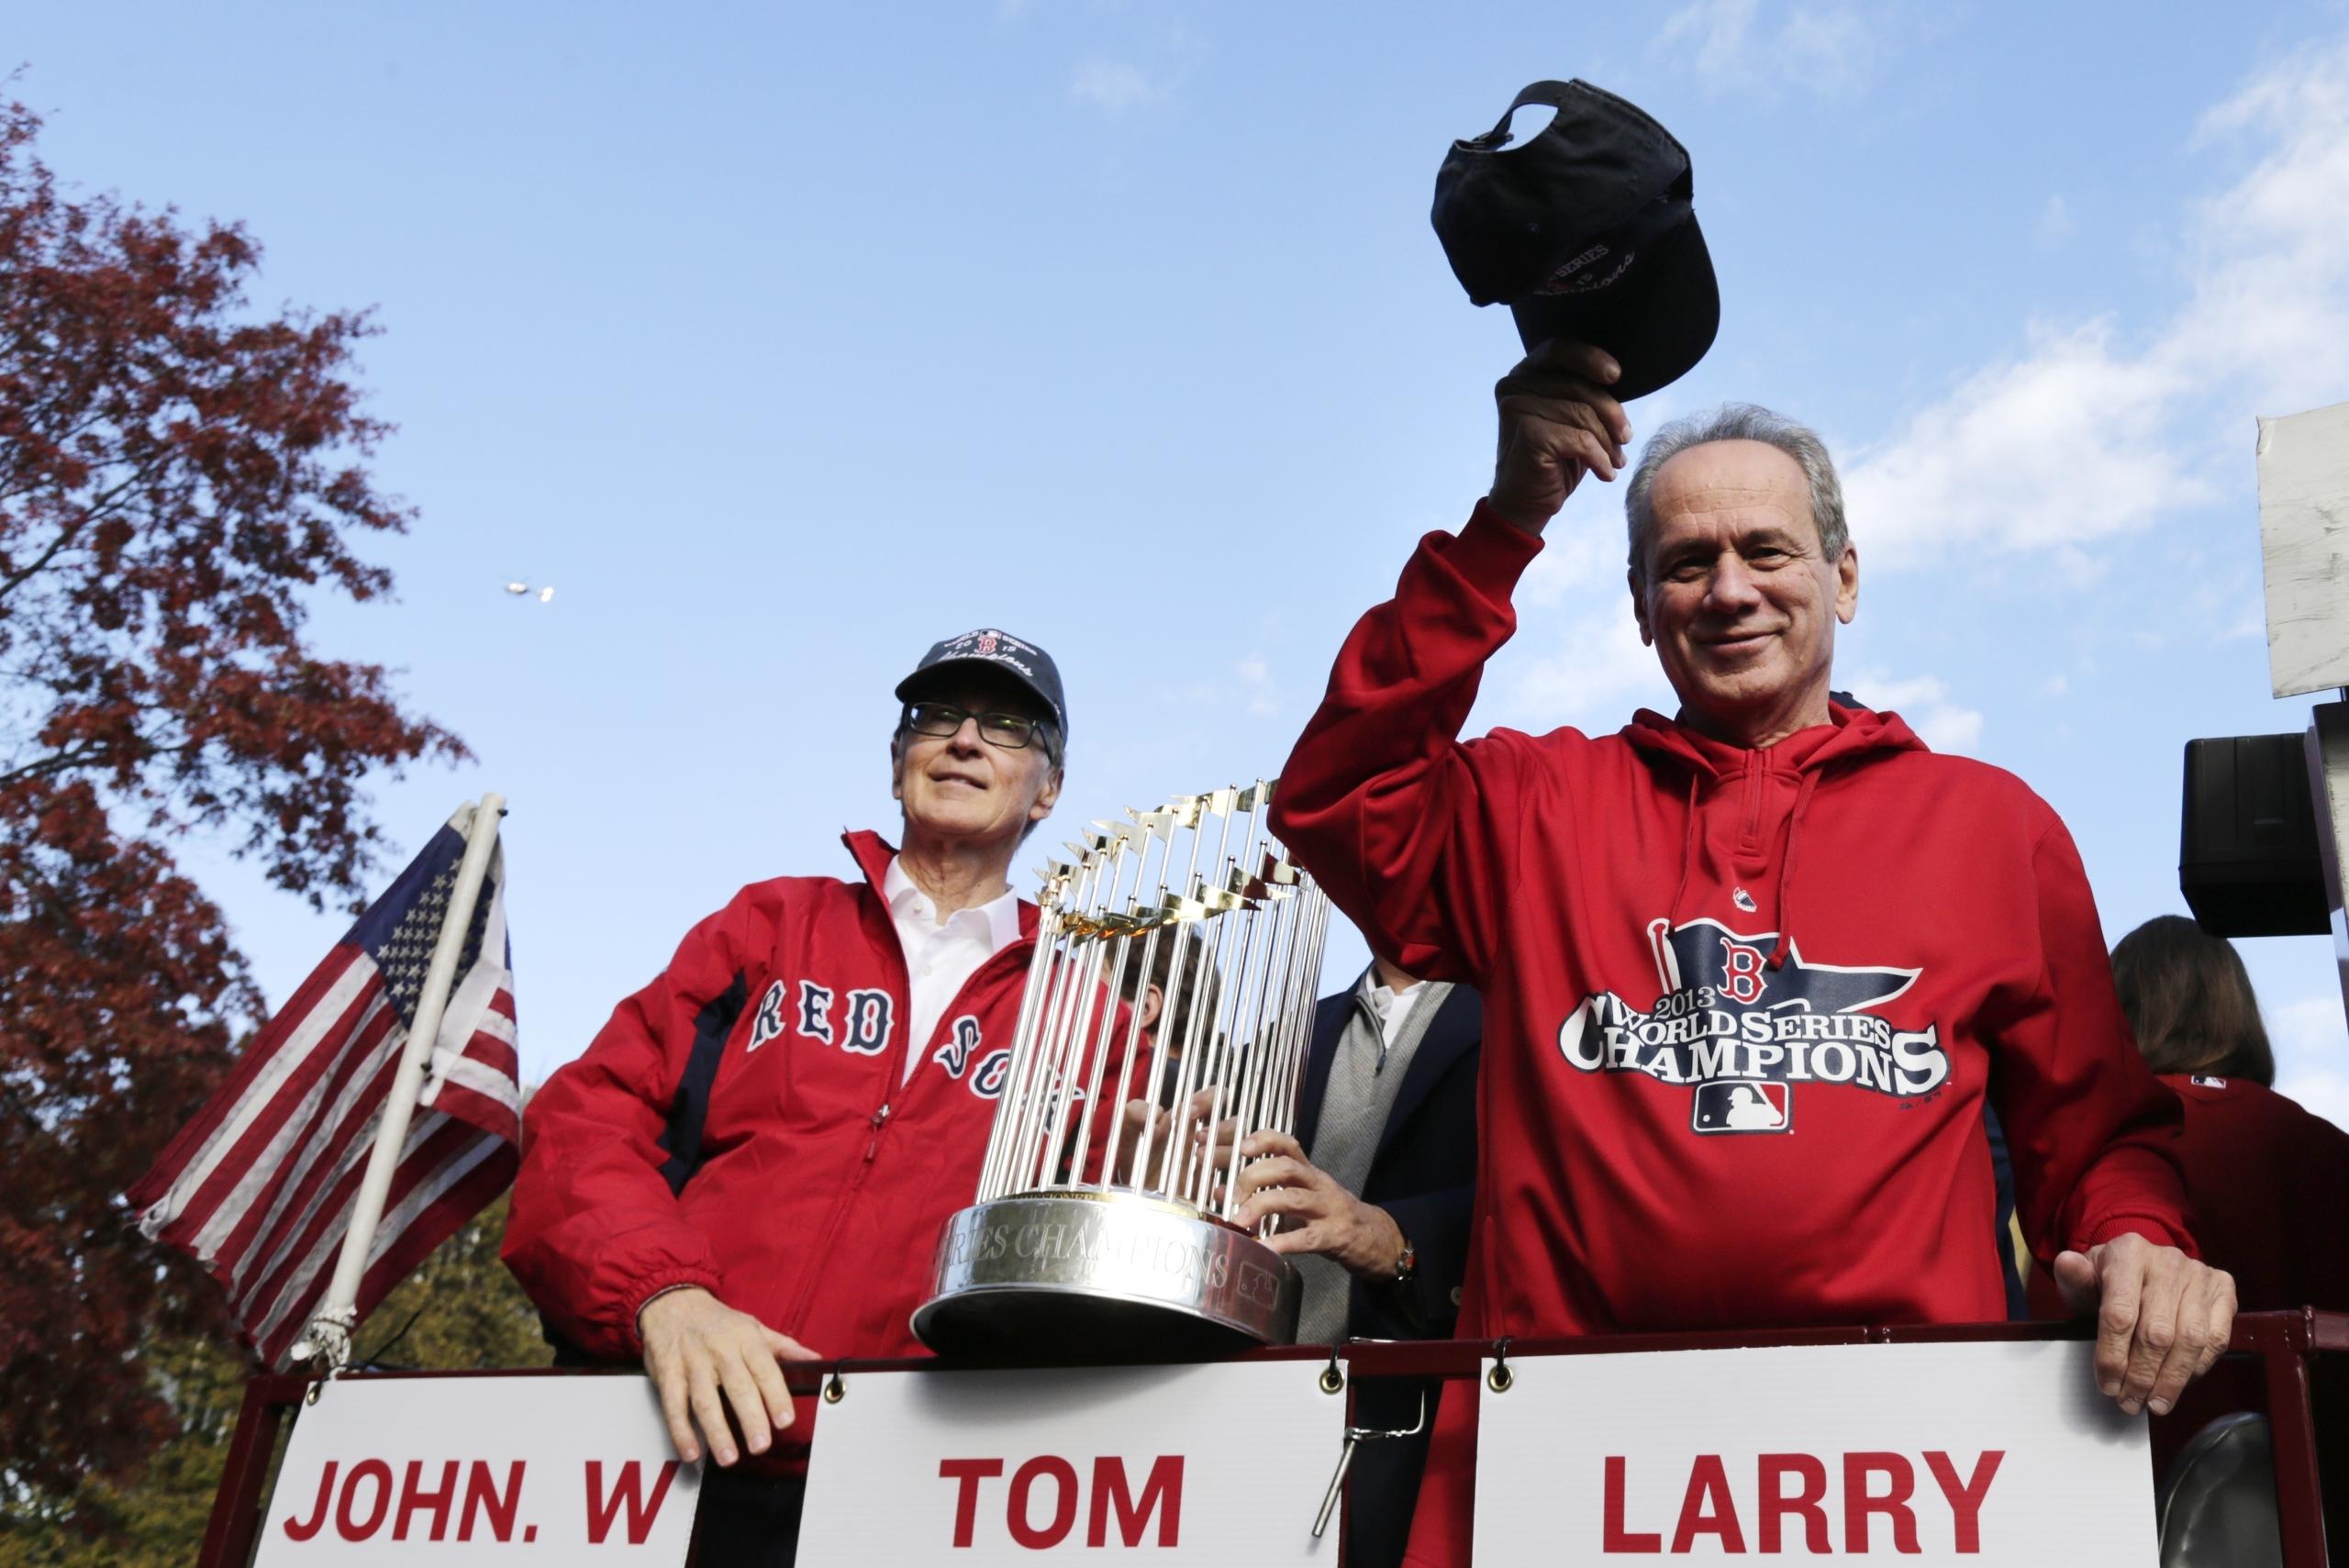 El presidente de los Red Sox de Boston en el 2013 lo era Larry Lucchino, quien aparece a la derecha saludando a los fanáticos junto al dueño John Henry durante el desfile de celebración por la consagración en la Serie Mundial de ese año.